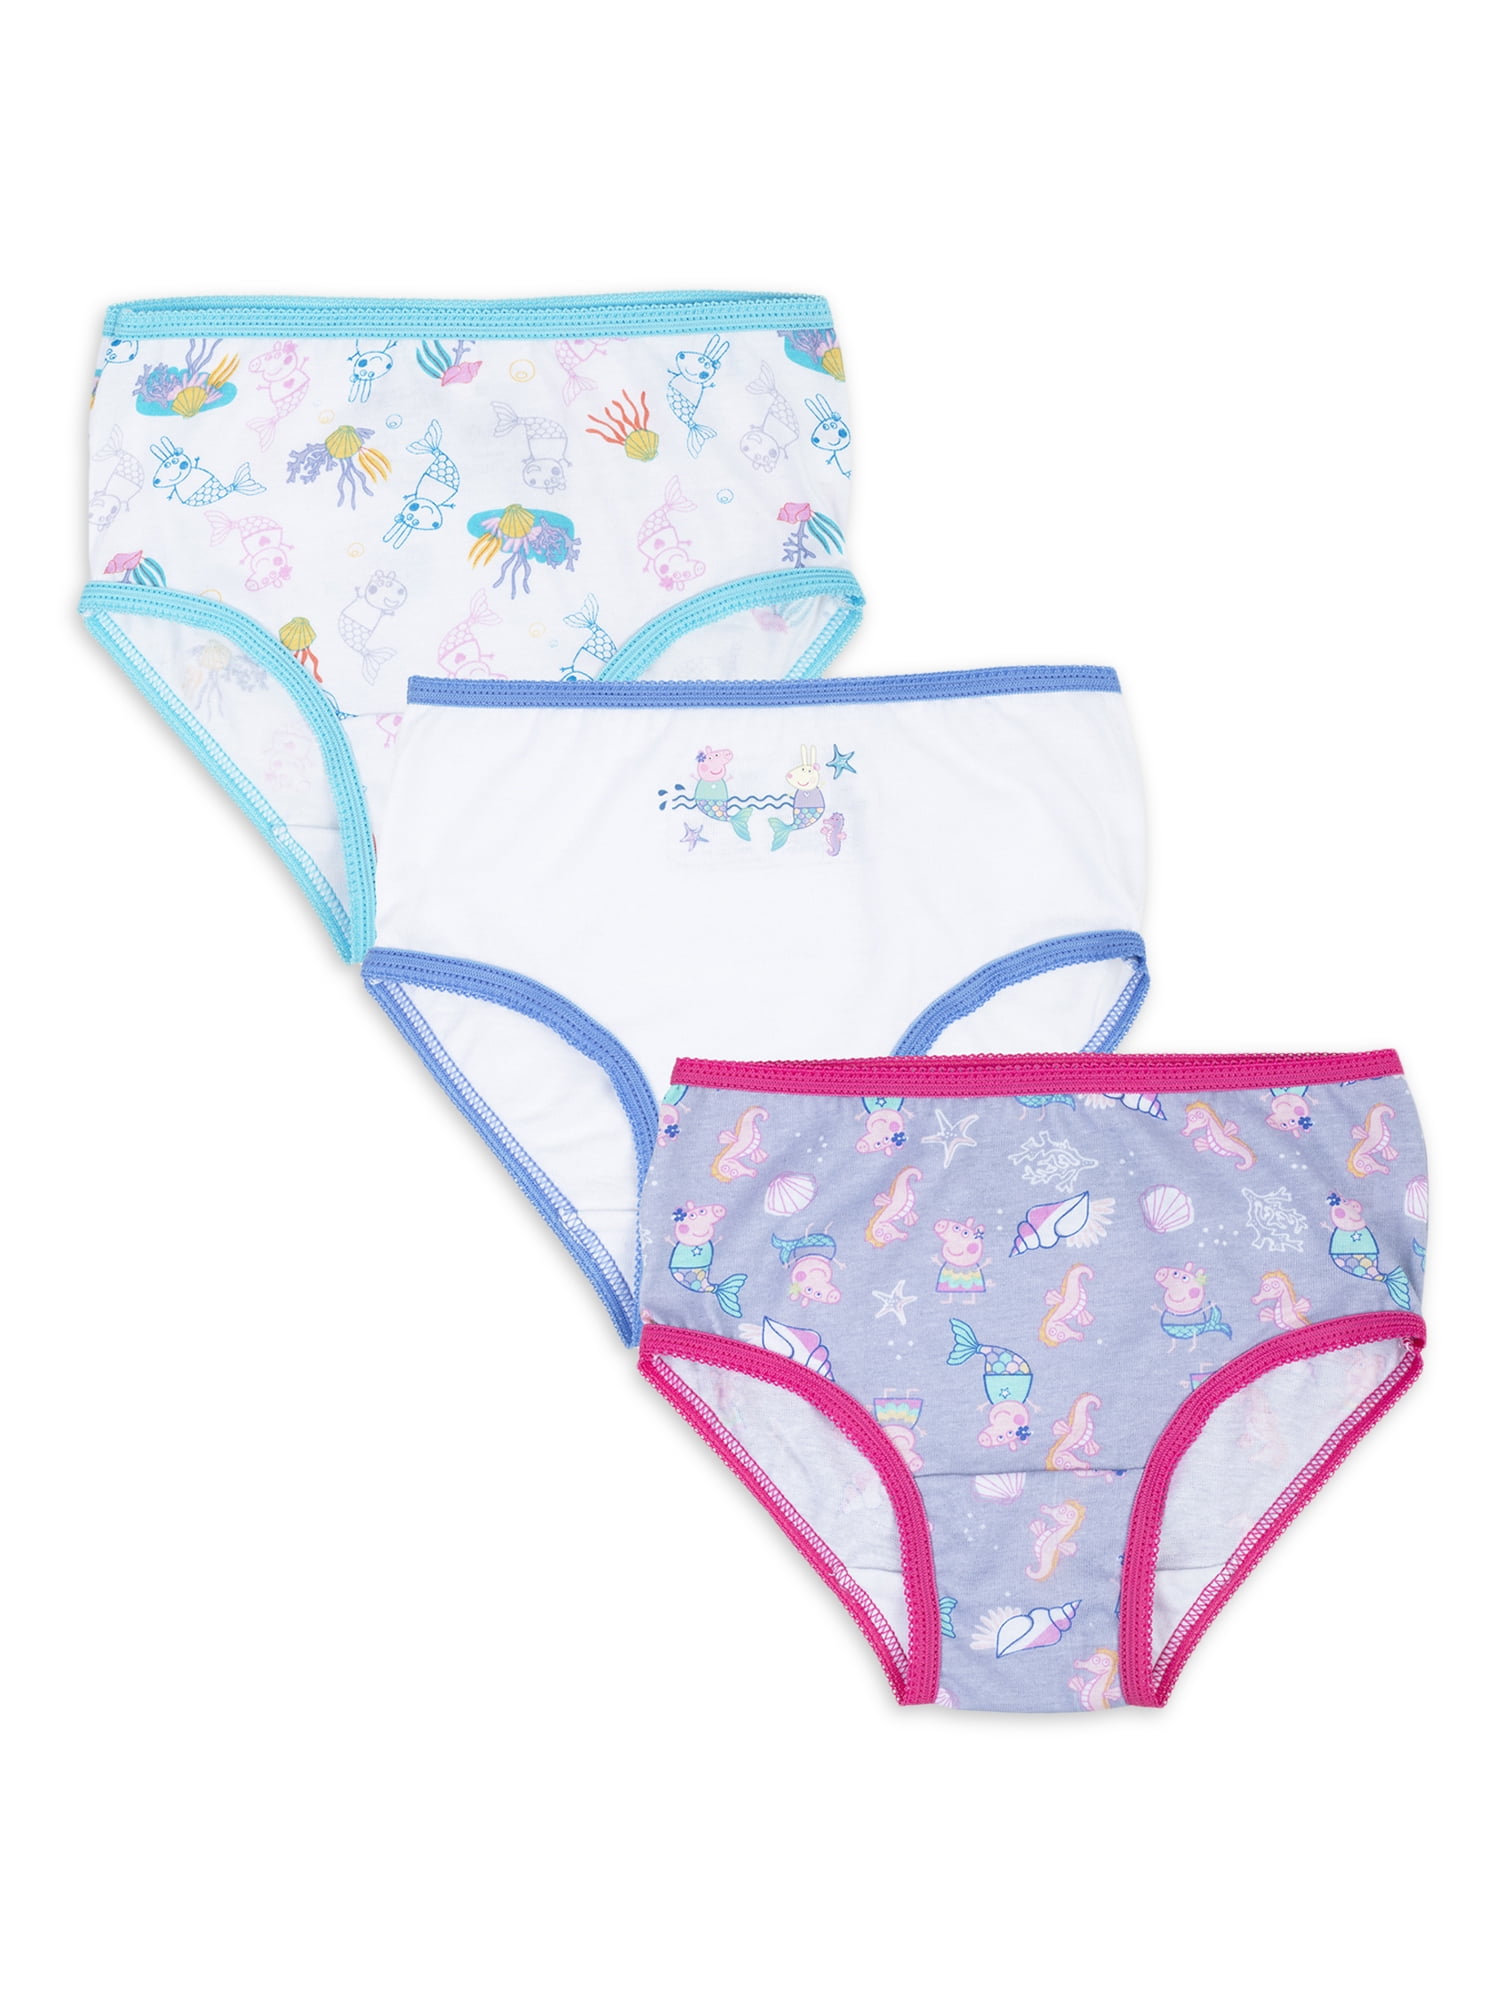 Peppa Pig Toddler Girls' Underwear, 3 Pack 